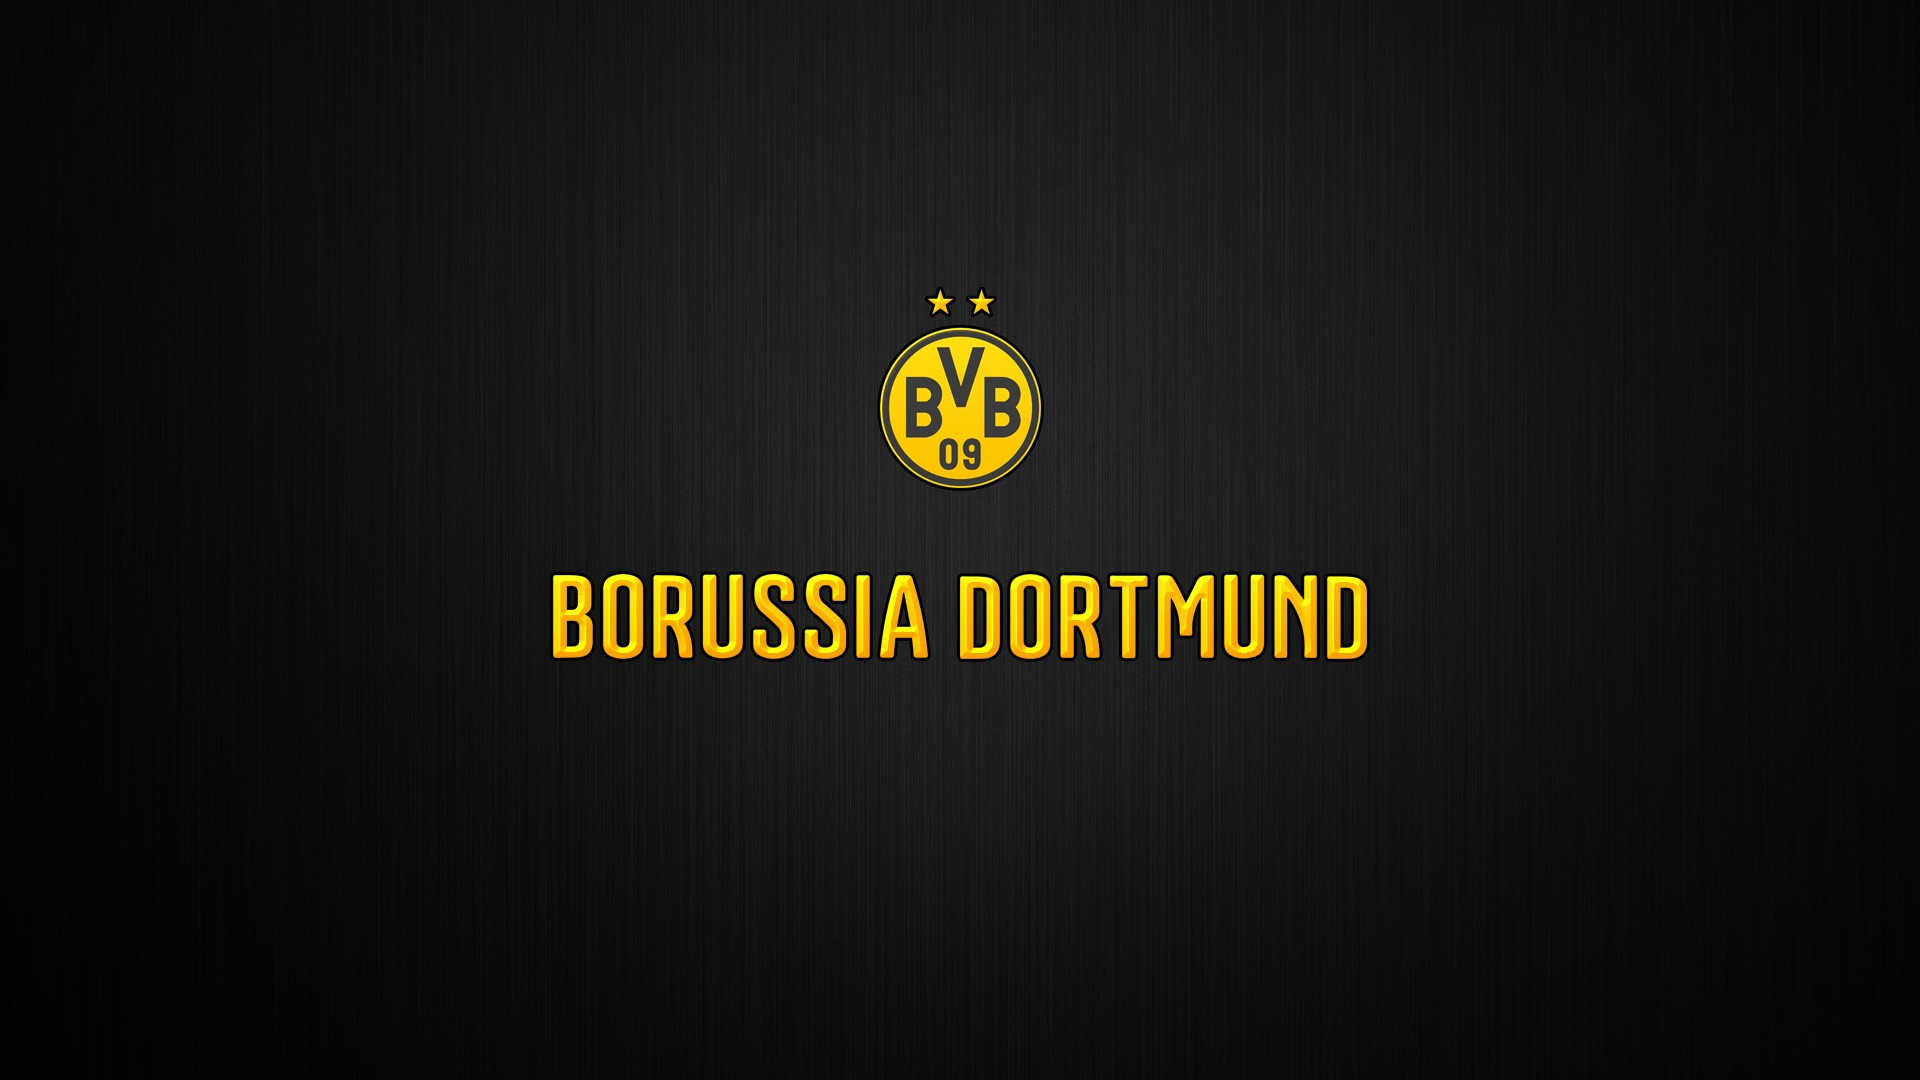 Borussia Dortmund: Eight-time German champions, Emblem. 1920x1080 Full HD Wallpaper.